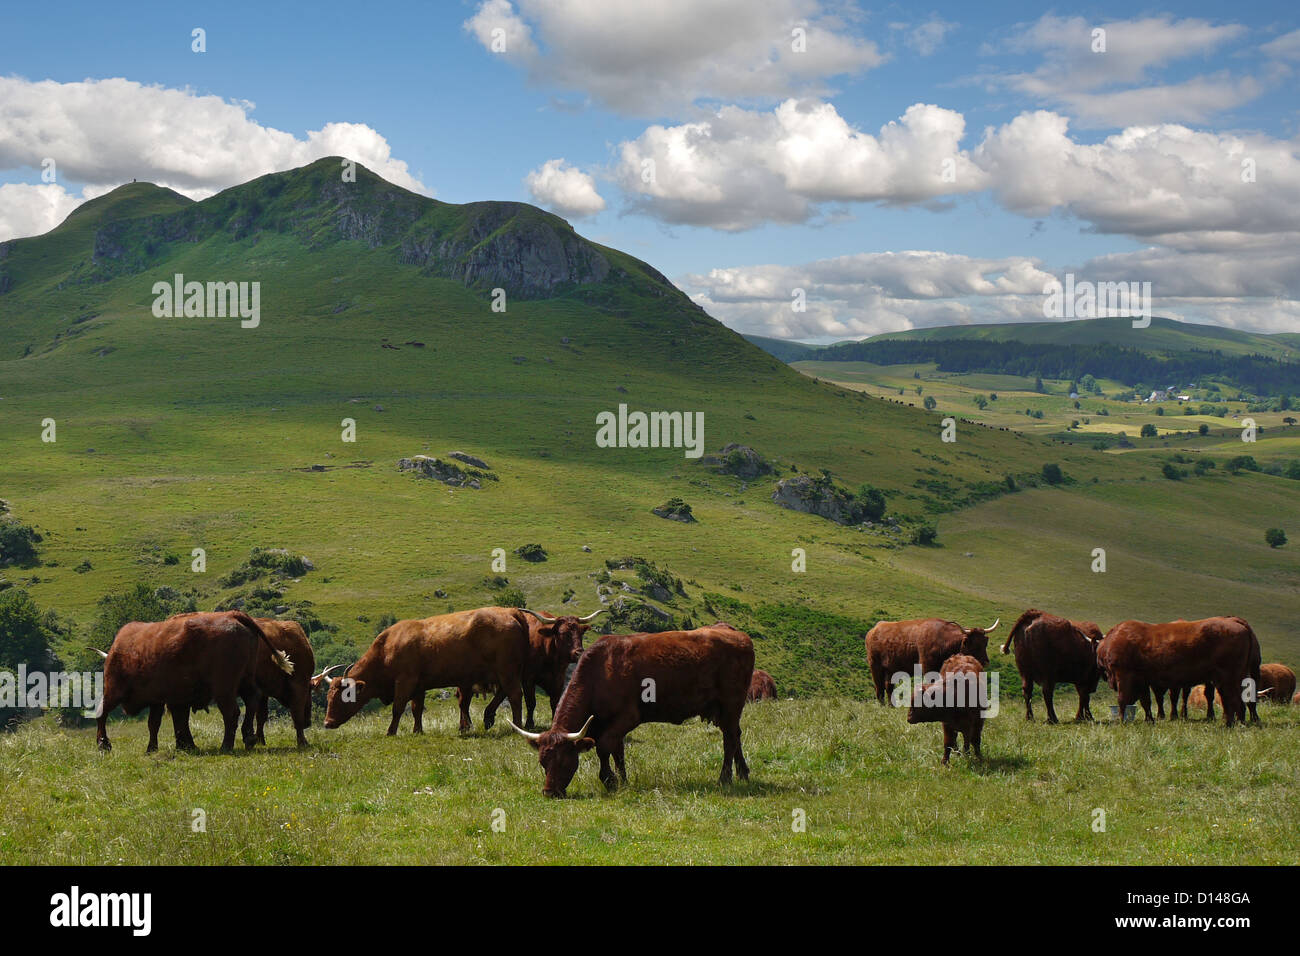 Typisch Ländliches Motiv der Auvergne Rinder auf Hochplateau in Puy de Dome Bezirk von Frankreich Stockfoto